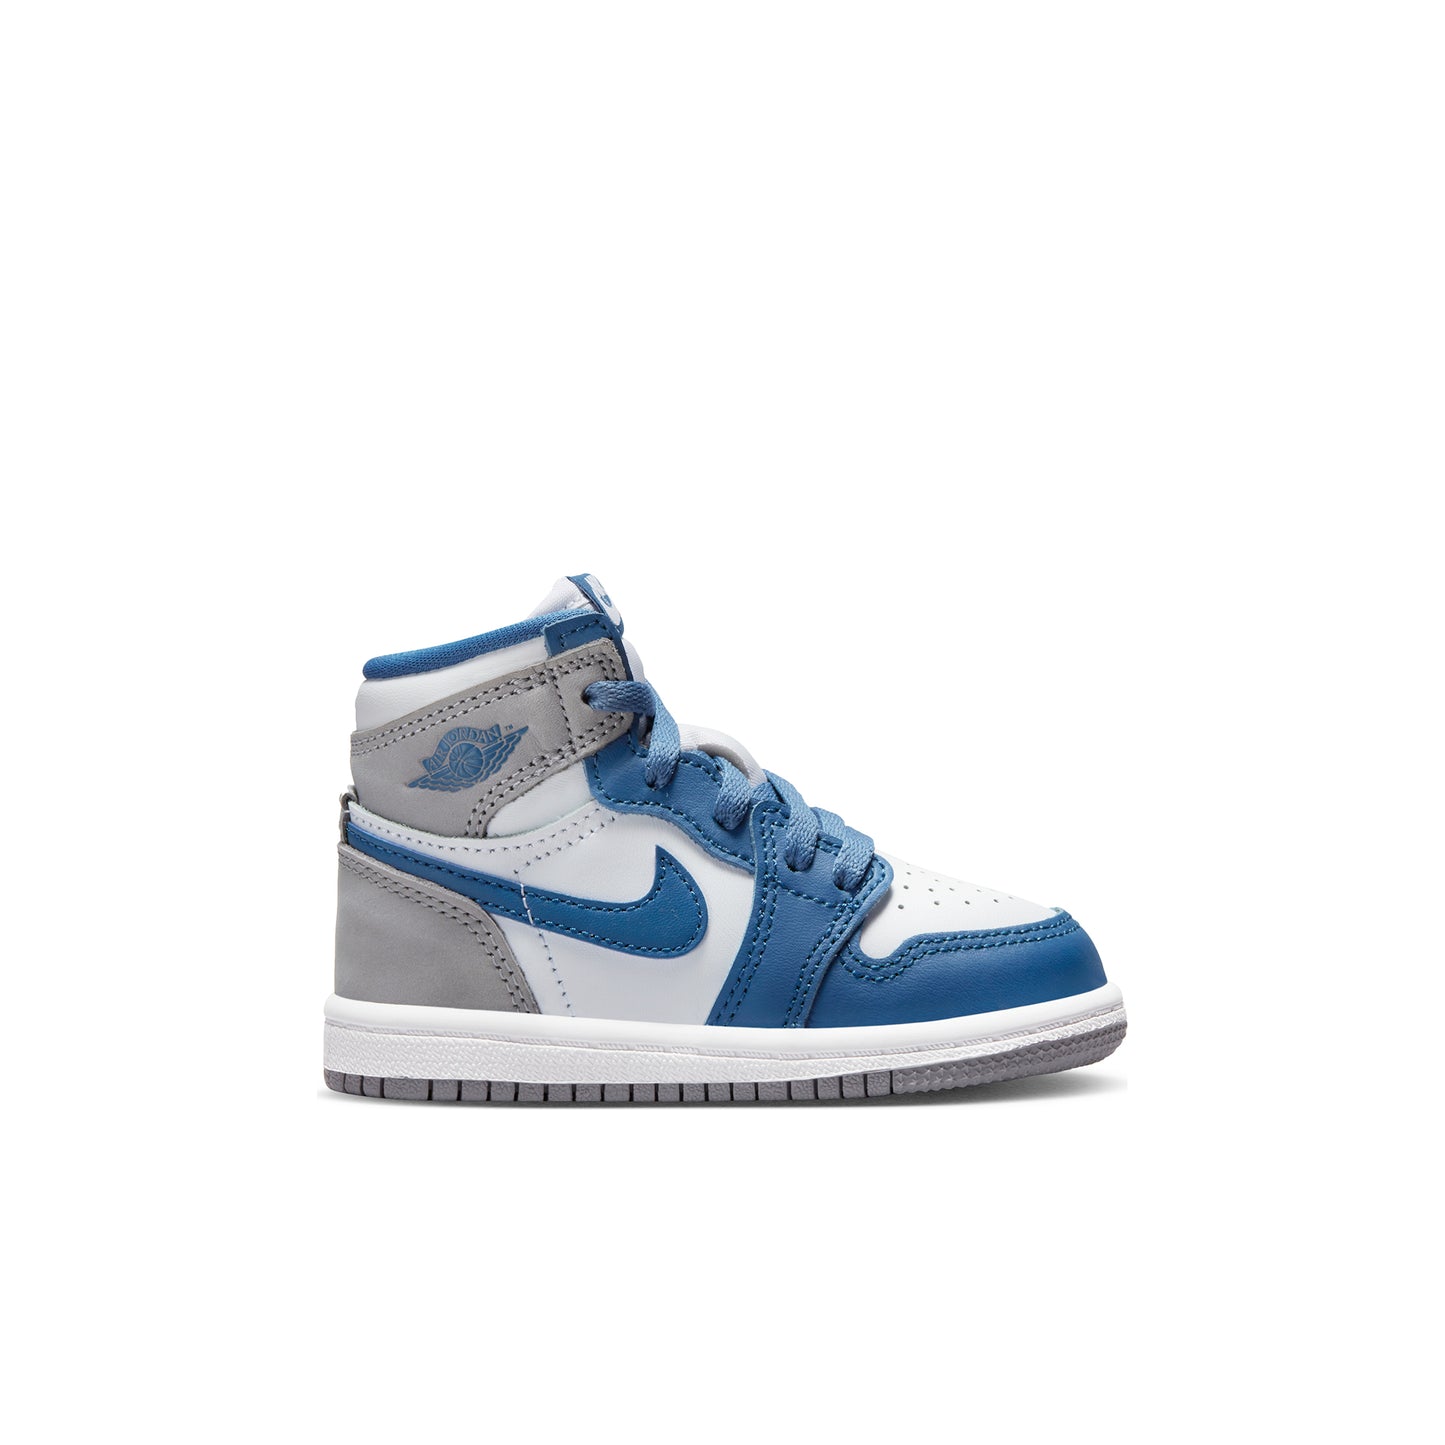 Nike Jordan 1 Retro High OG True Blue TD